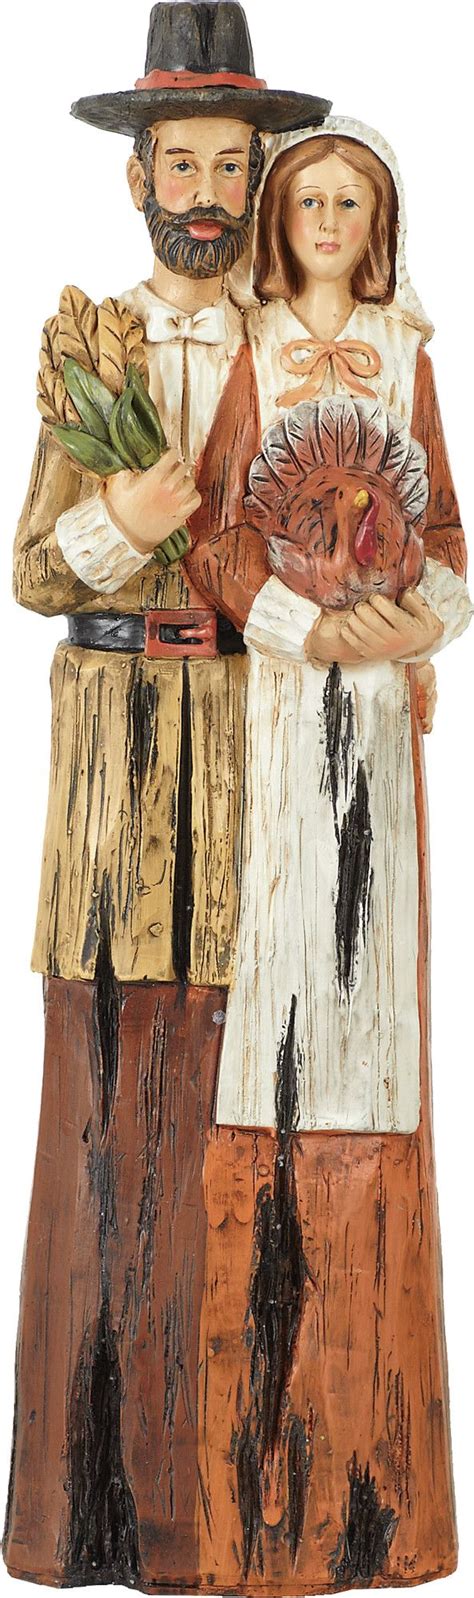 Transpac Imports Inc Harvest Look Pilgrim Couple Figurine Pilgrim